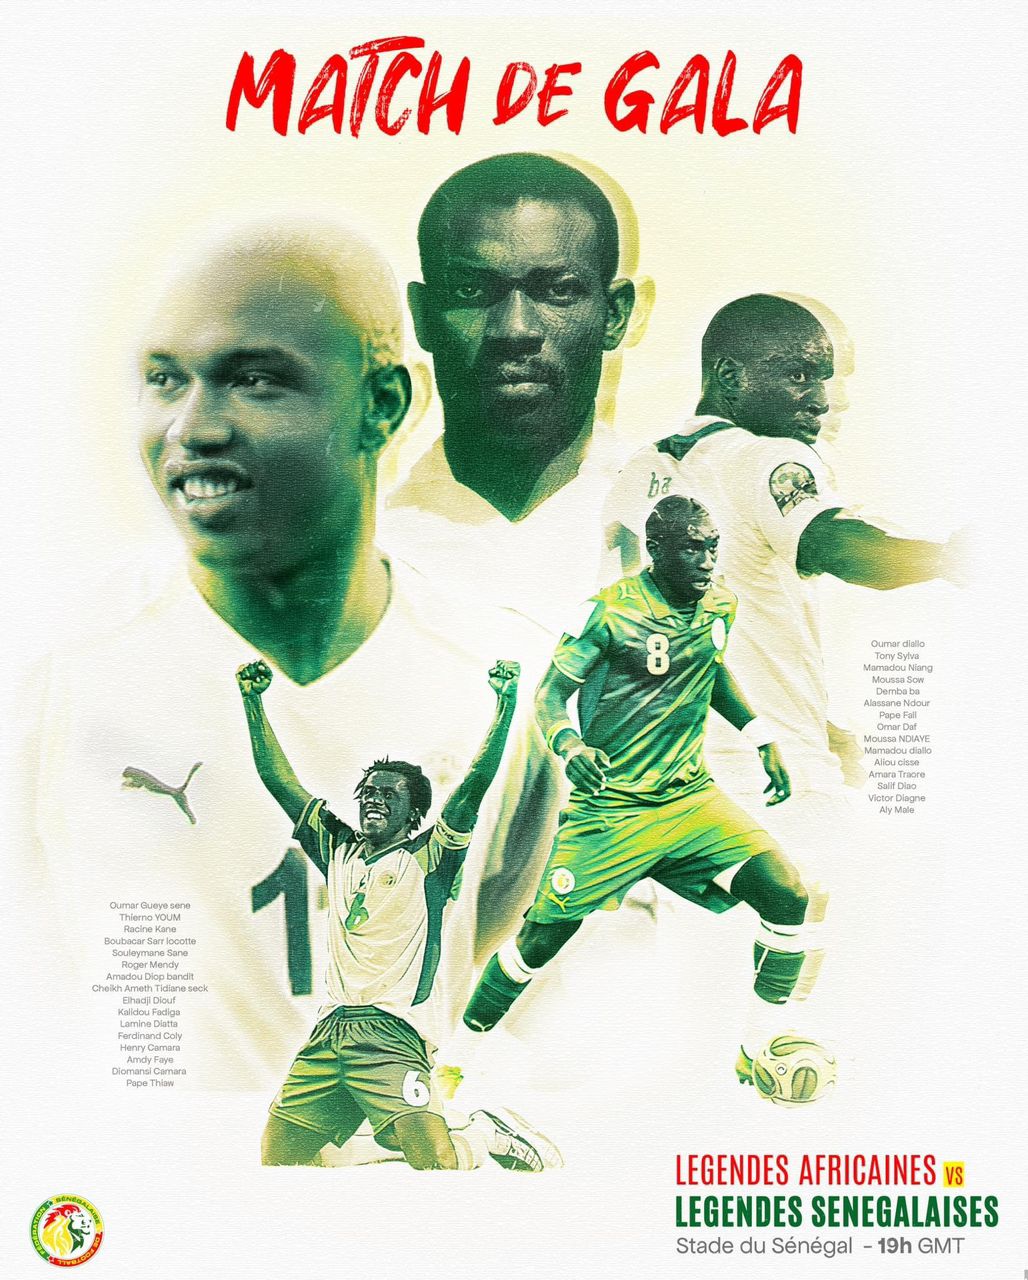 La liste de ces légendes du Foot africain qui vont jouer le match d’inauguration du stade Sénégalais…